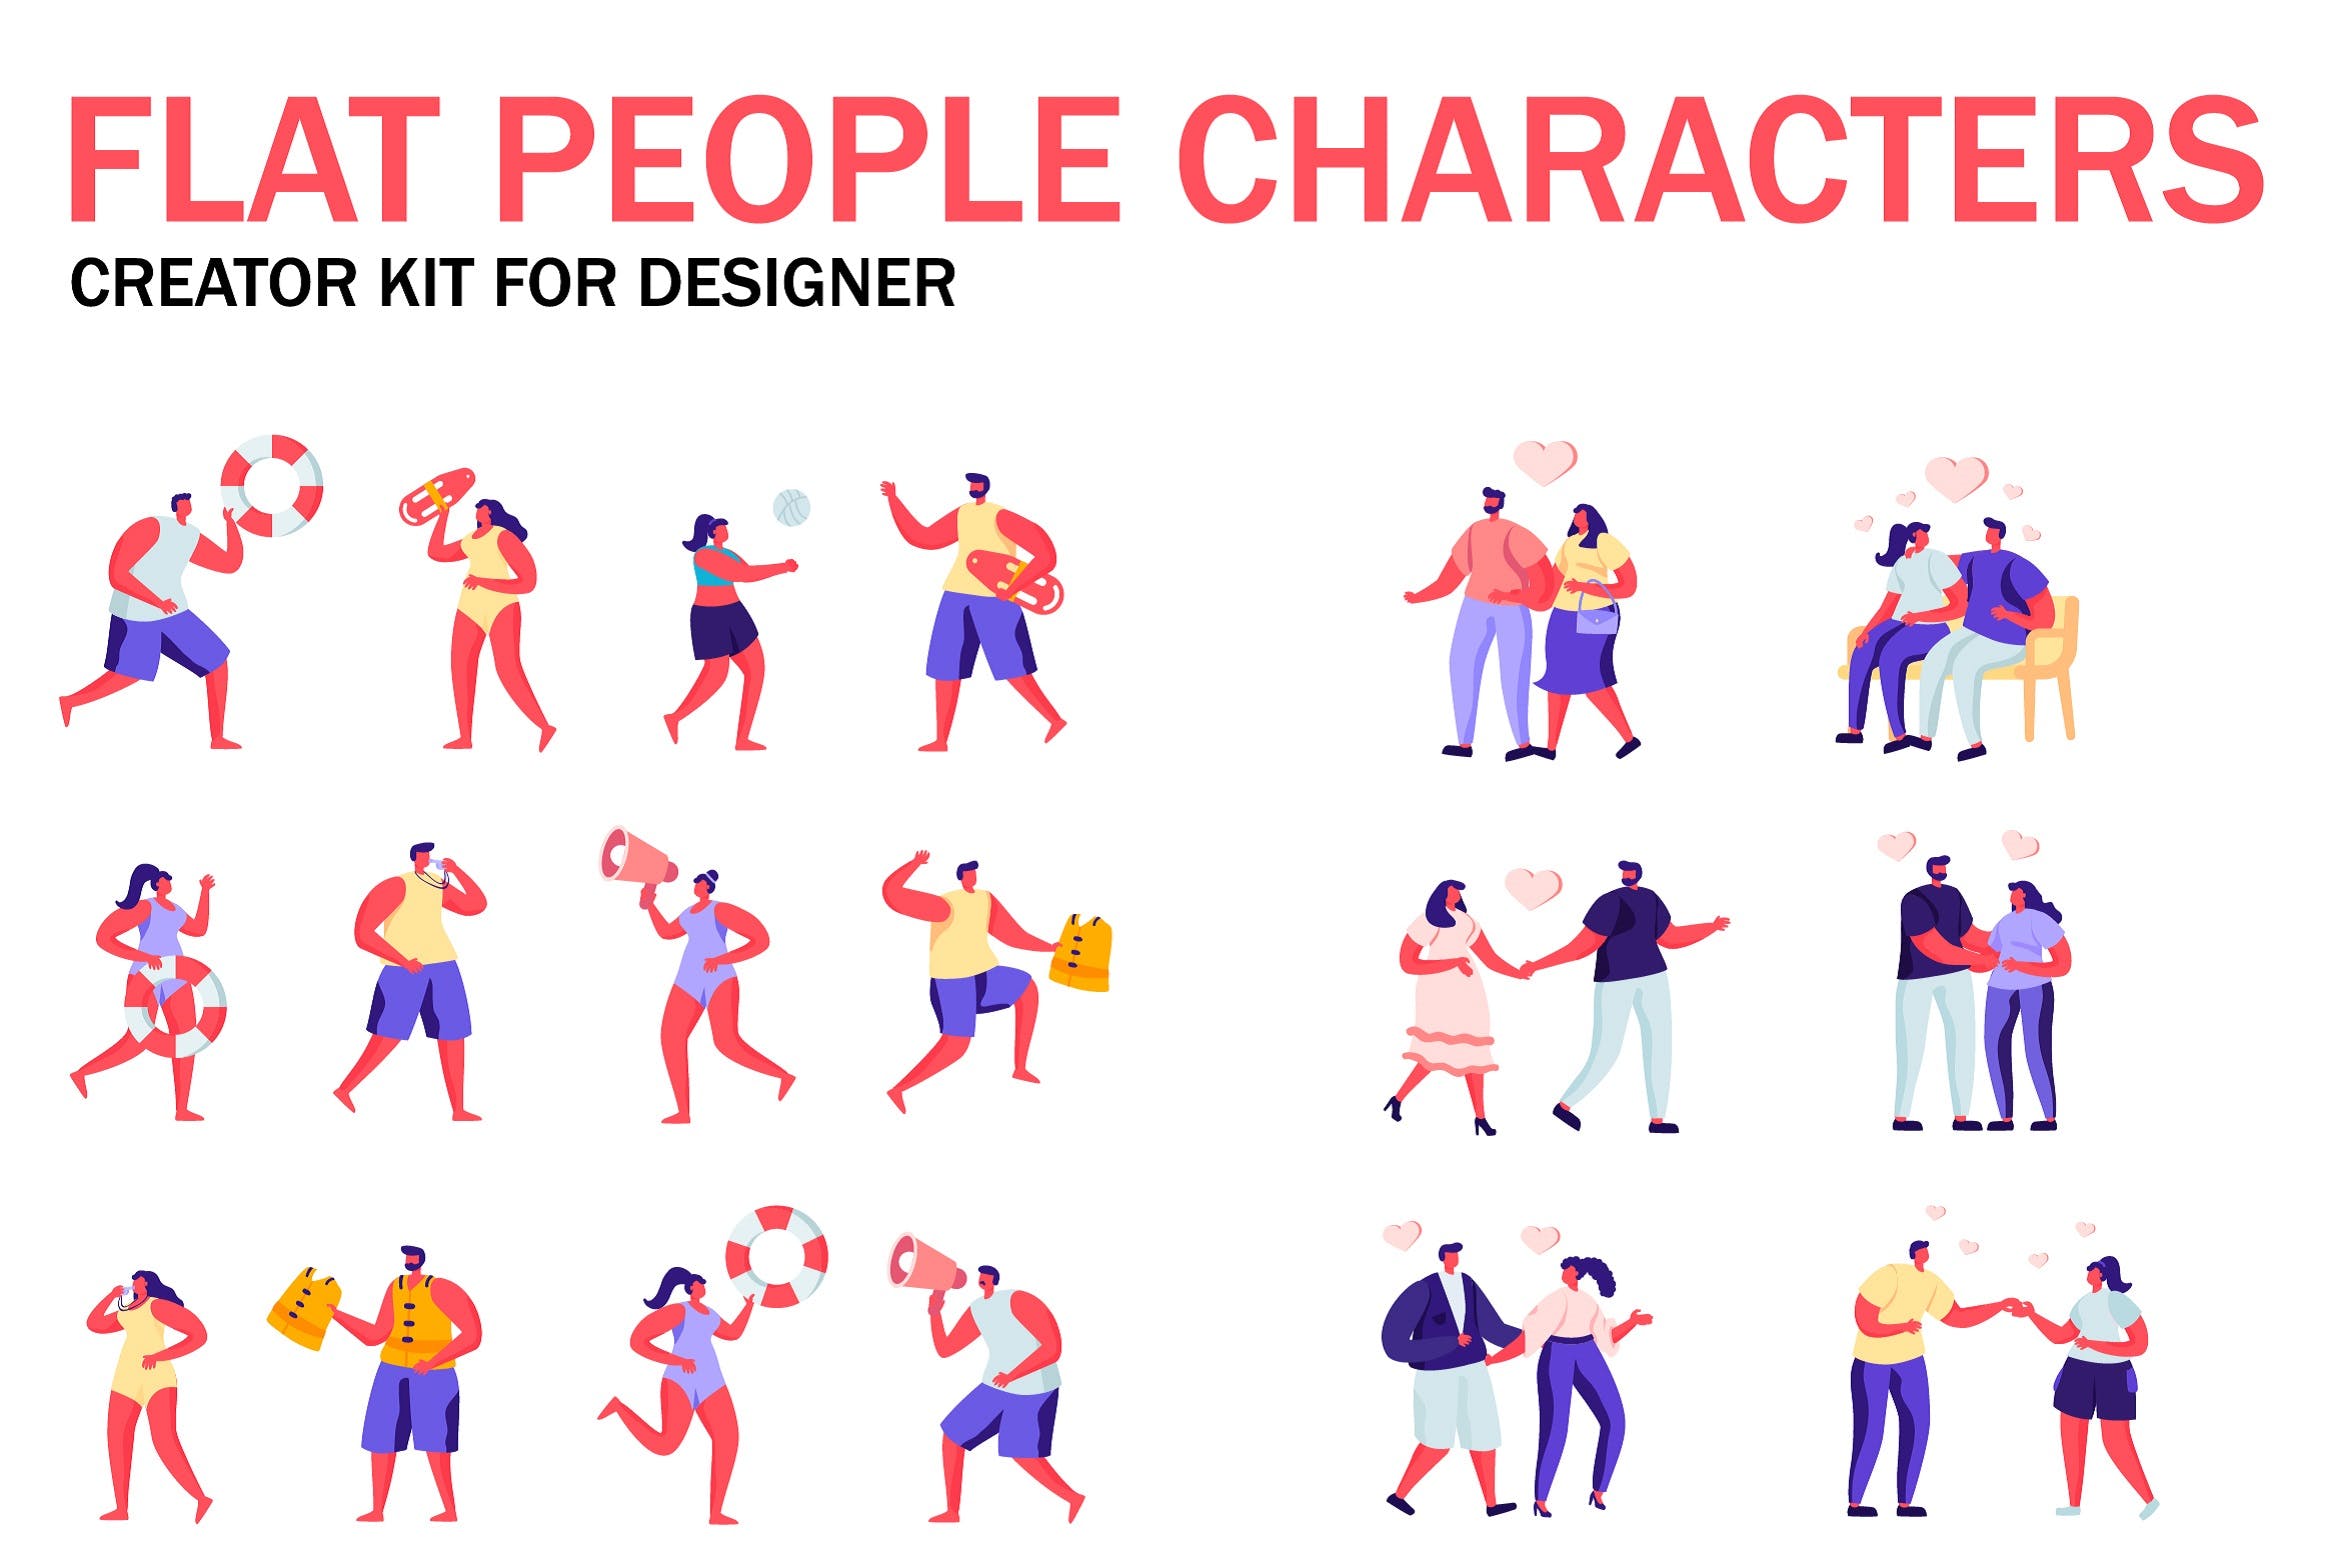 扁平化设计风格虚拟人物角色图形设计工具包v6 Flat People Character Creator Kit插图